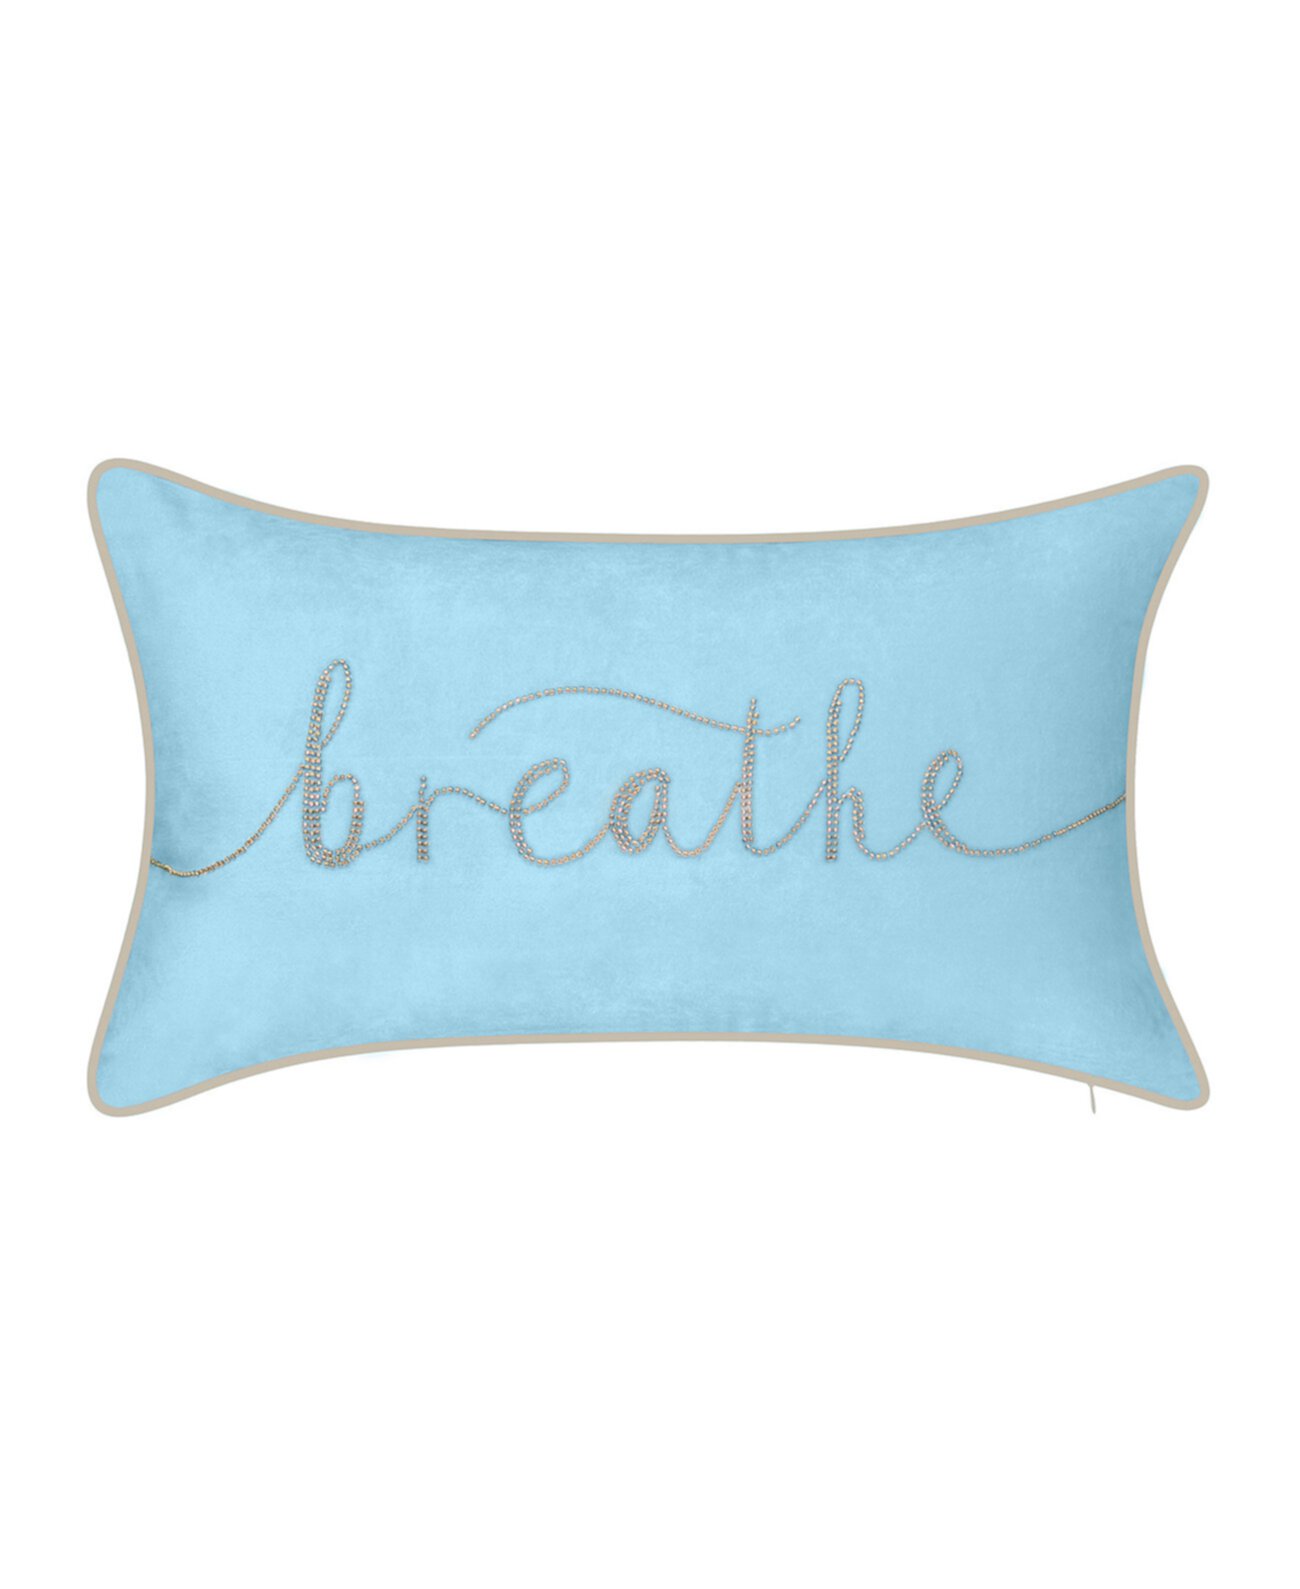 Празднование "Дыши" вышитая бисером декоративная подушка с бархатной текстурой, 20 "x 12" Edie@Home